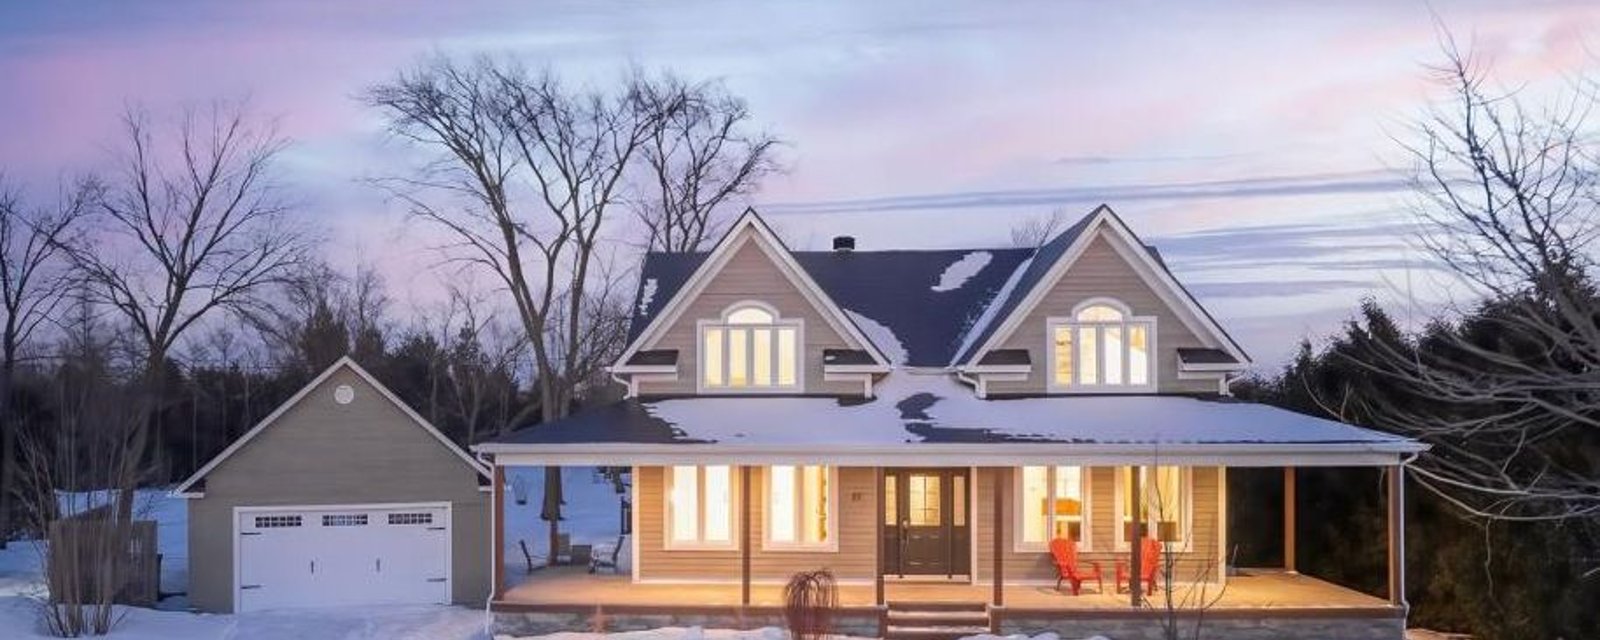 Lumineux cottage familial qui déborde de charme: un nid douillet de 5 chambres et 2 salles de bain 